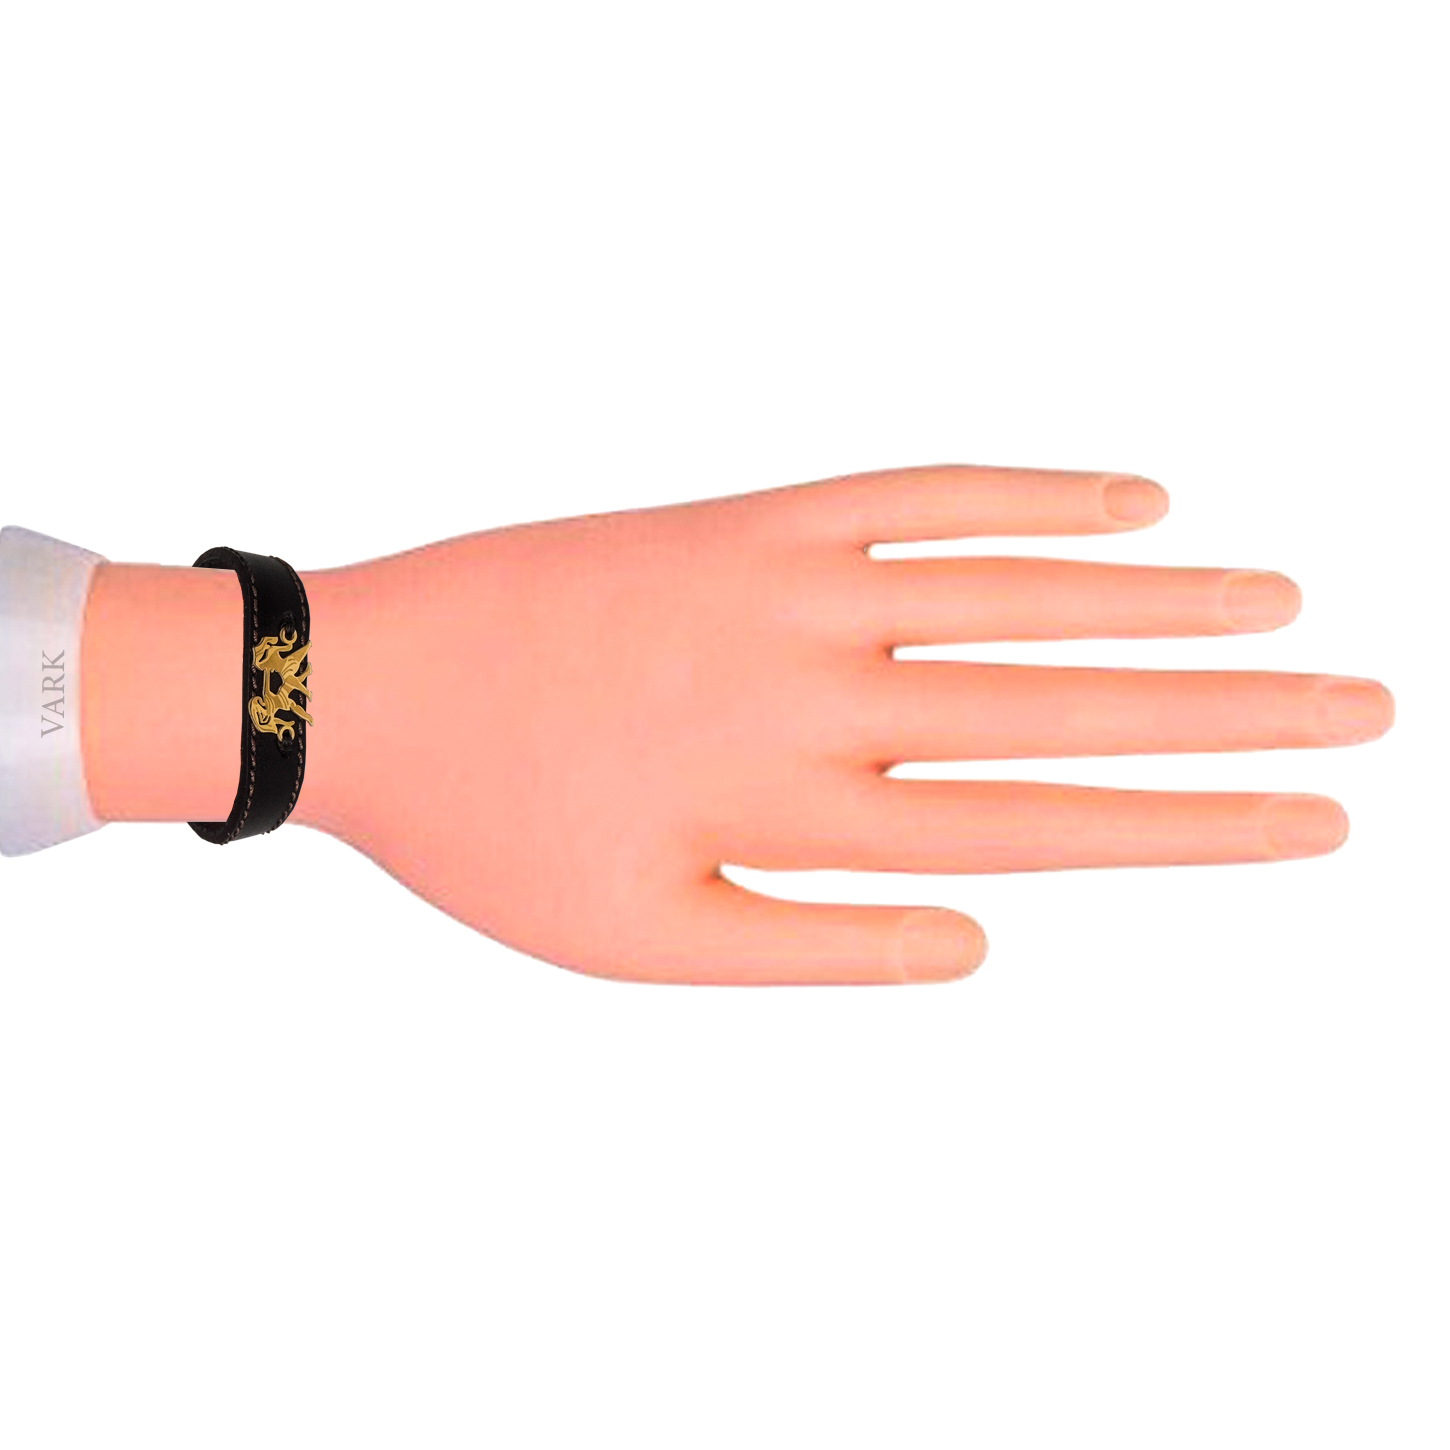 دستبند چرم وارک طرح نماد خرداد مدل لیبرا کد rb119 -  - 6